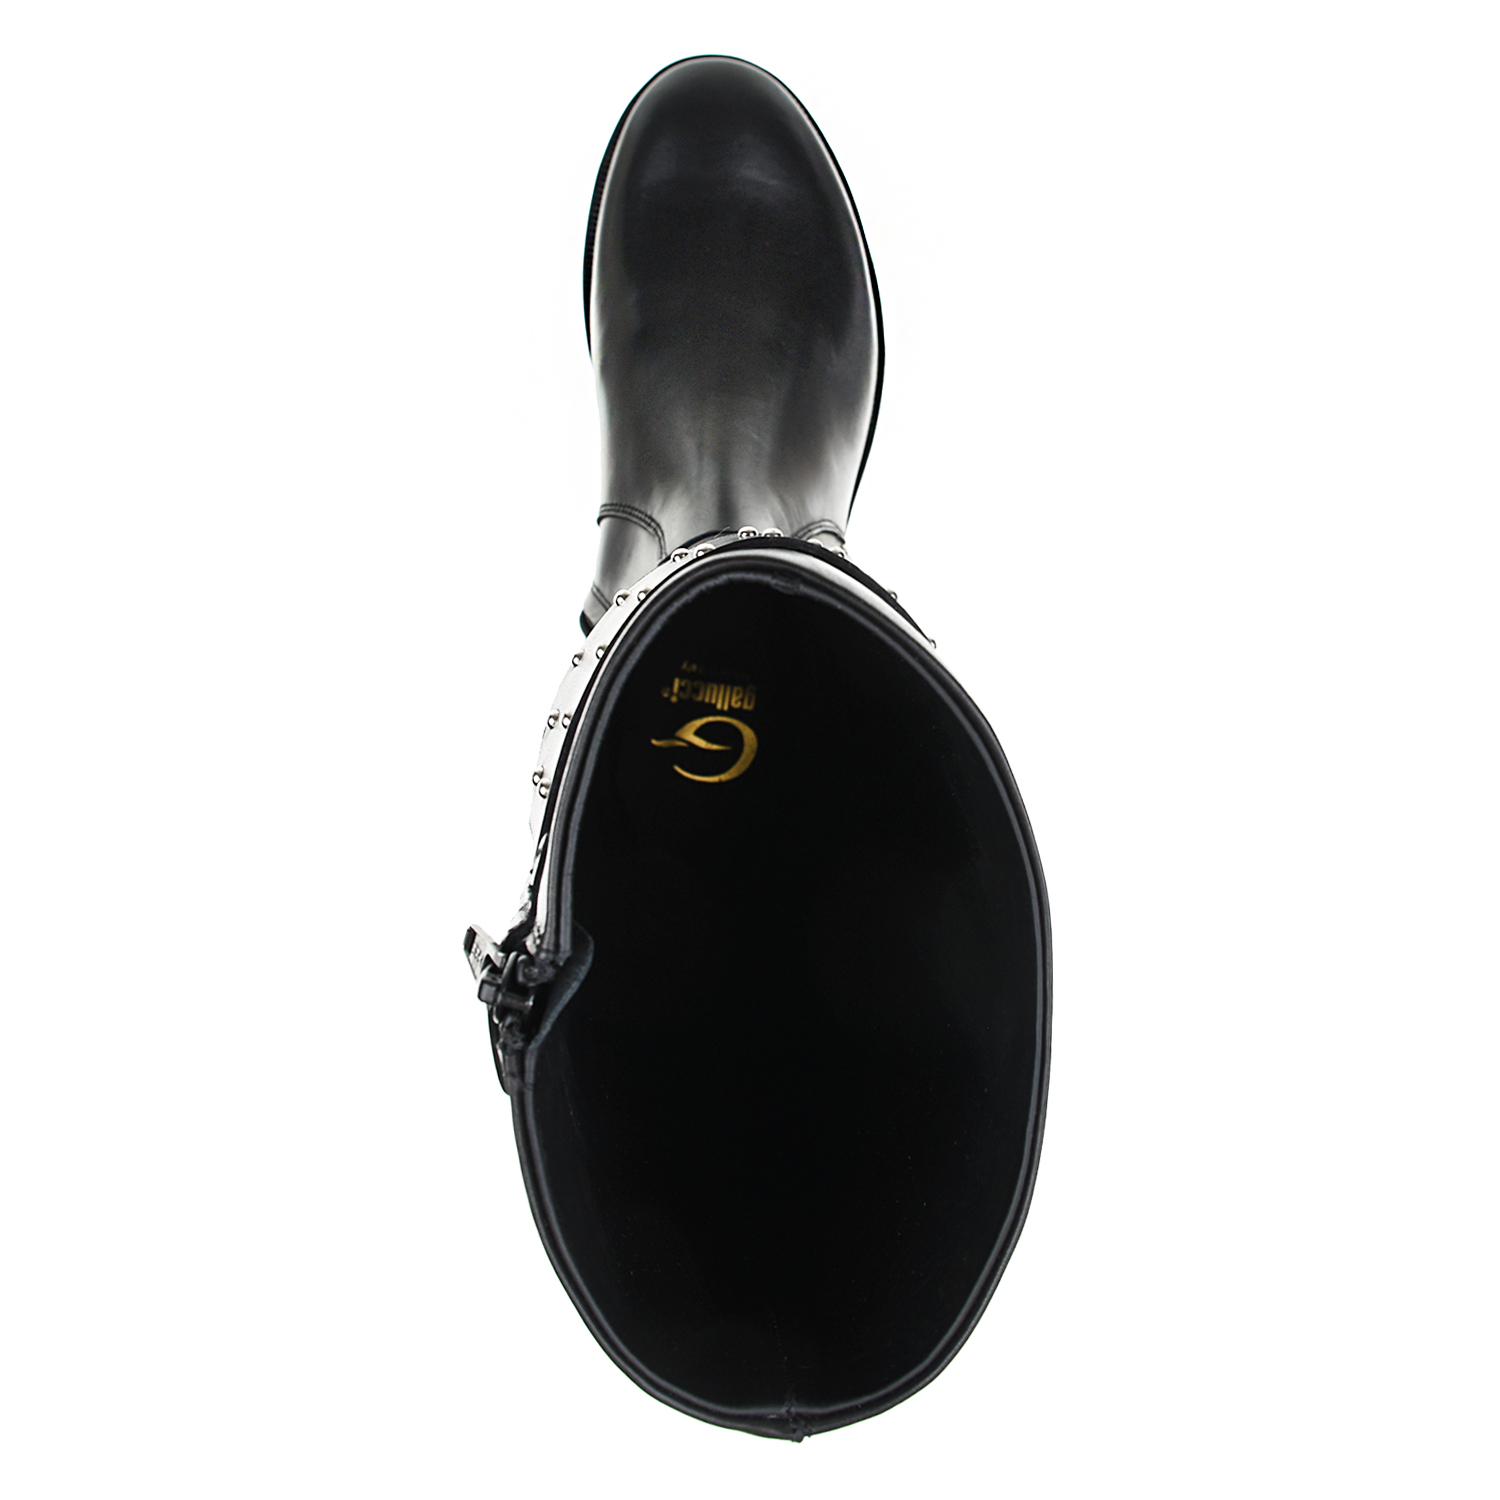 Высокие сапоги с ремнями Gallucci, размер 30, цвет черный - фото 5